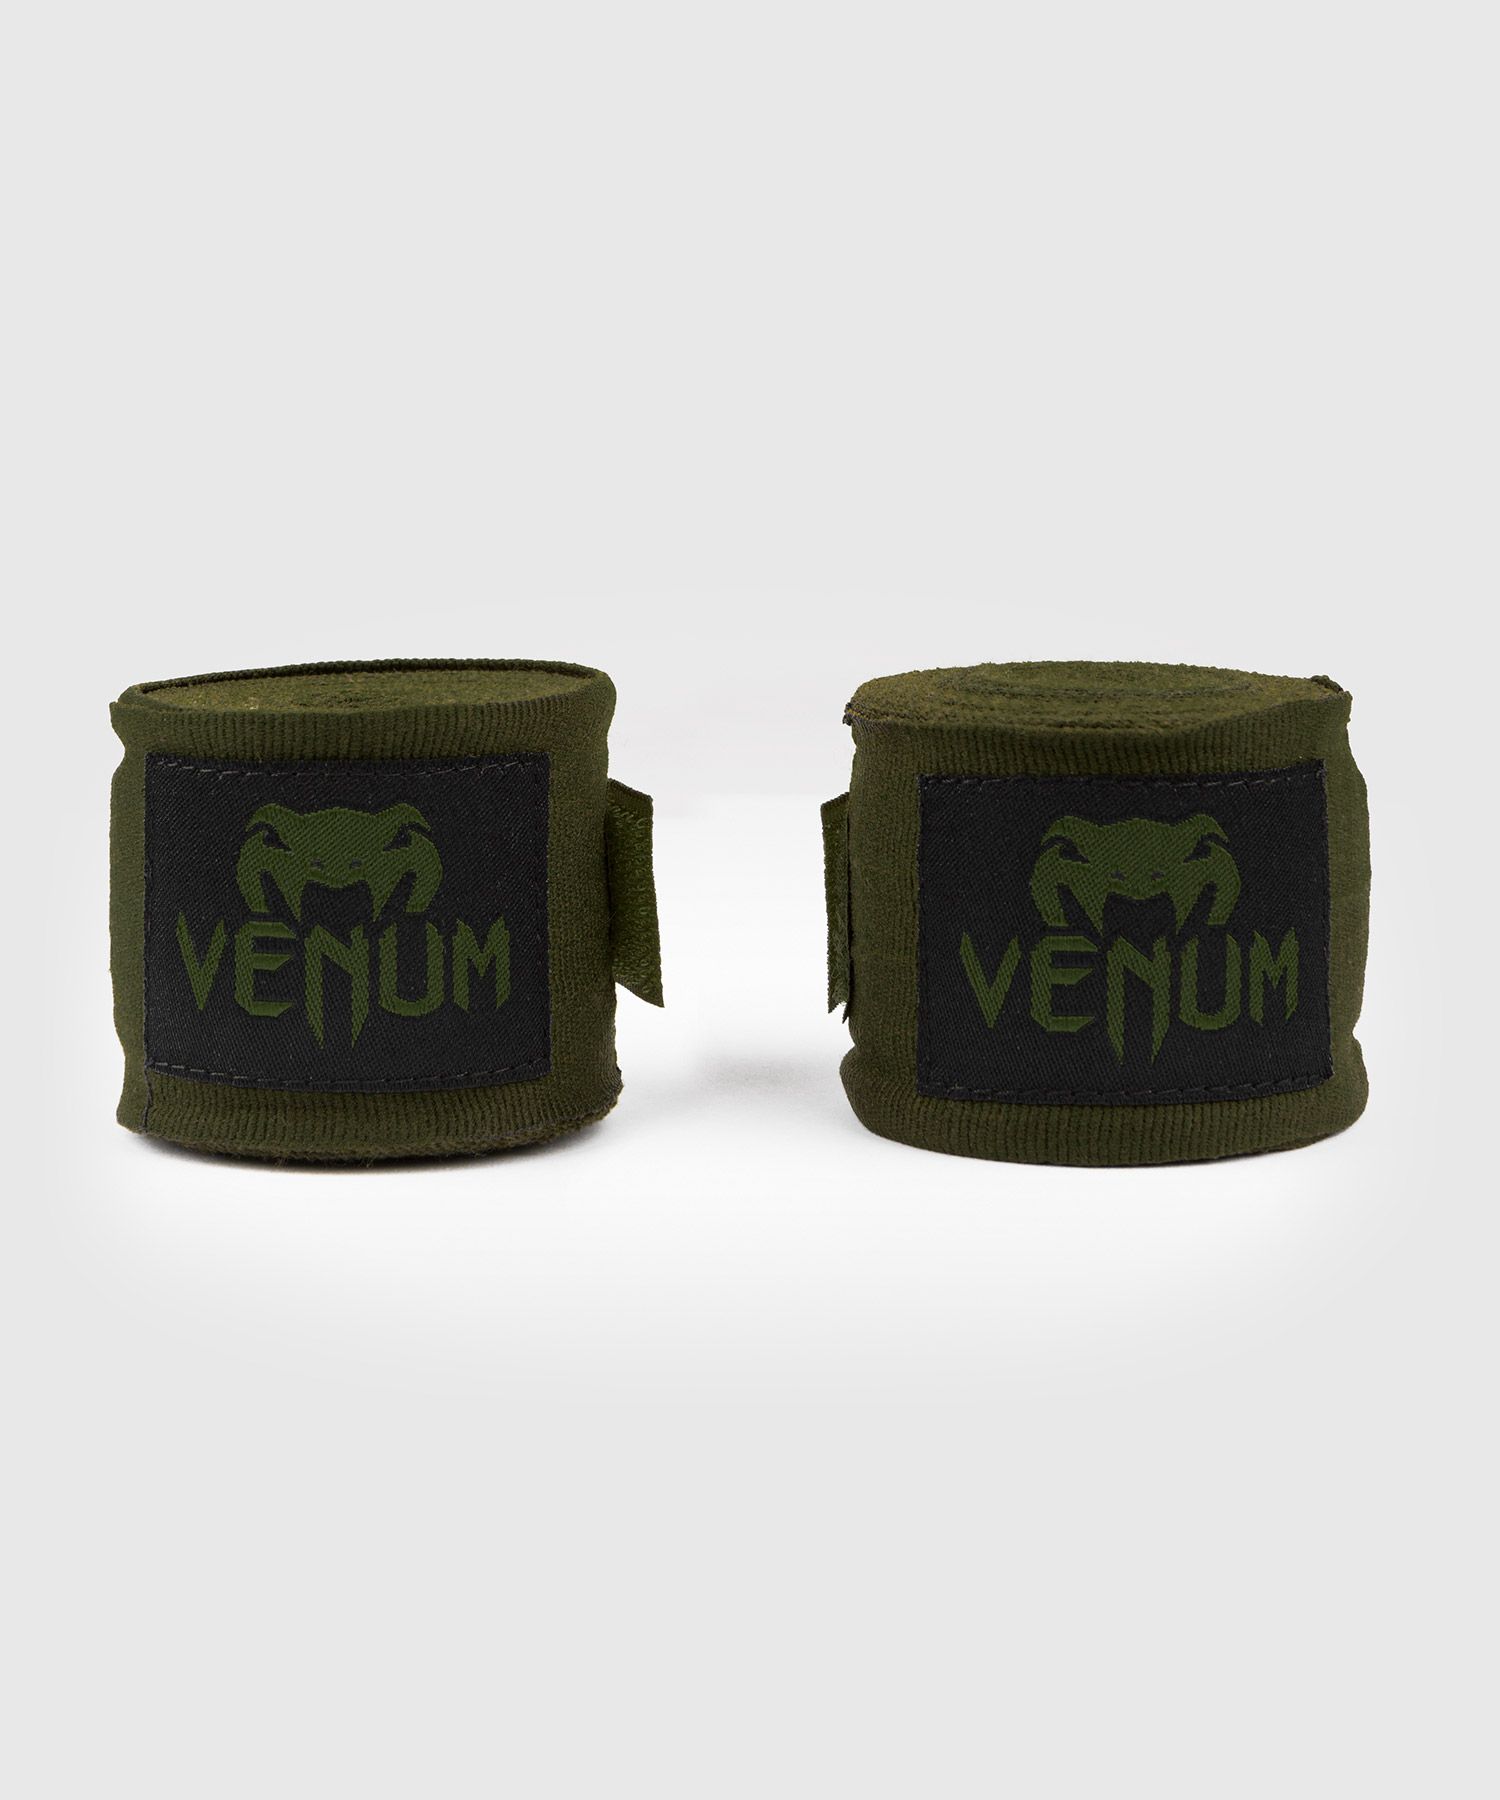 Bandages de boxe Venum Kontact - 2,5 mètres - Kaki/Noir